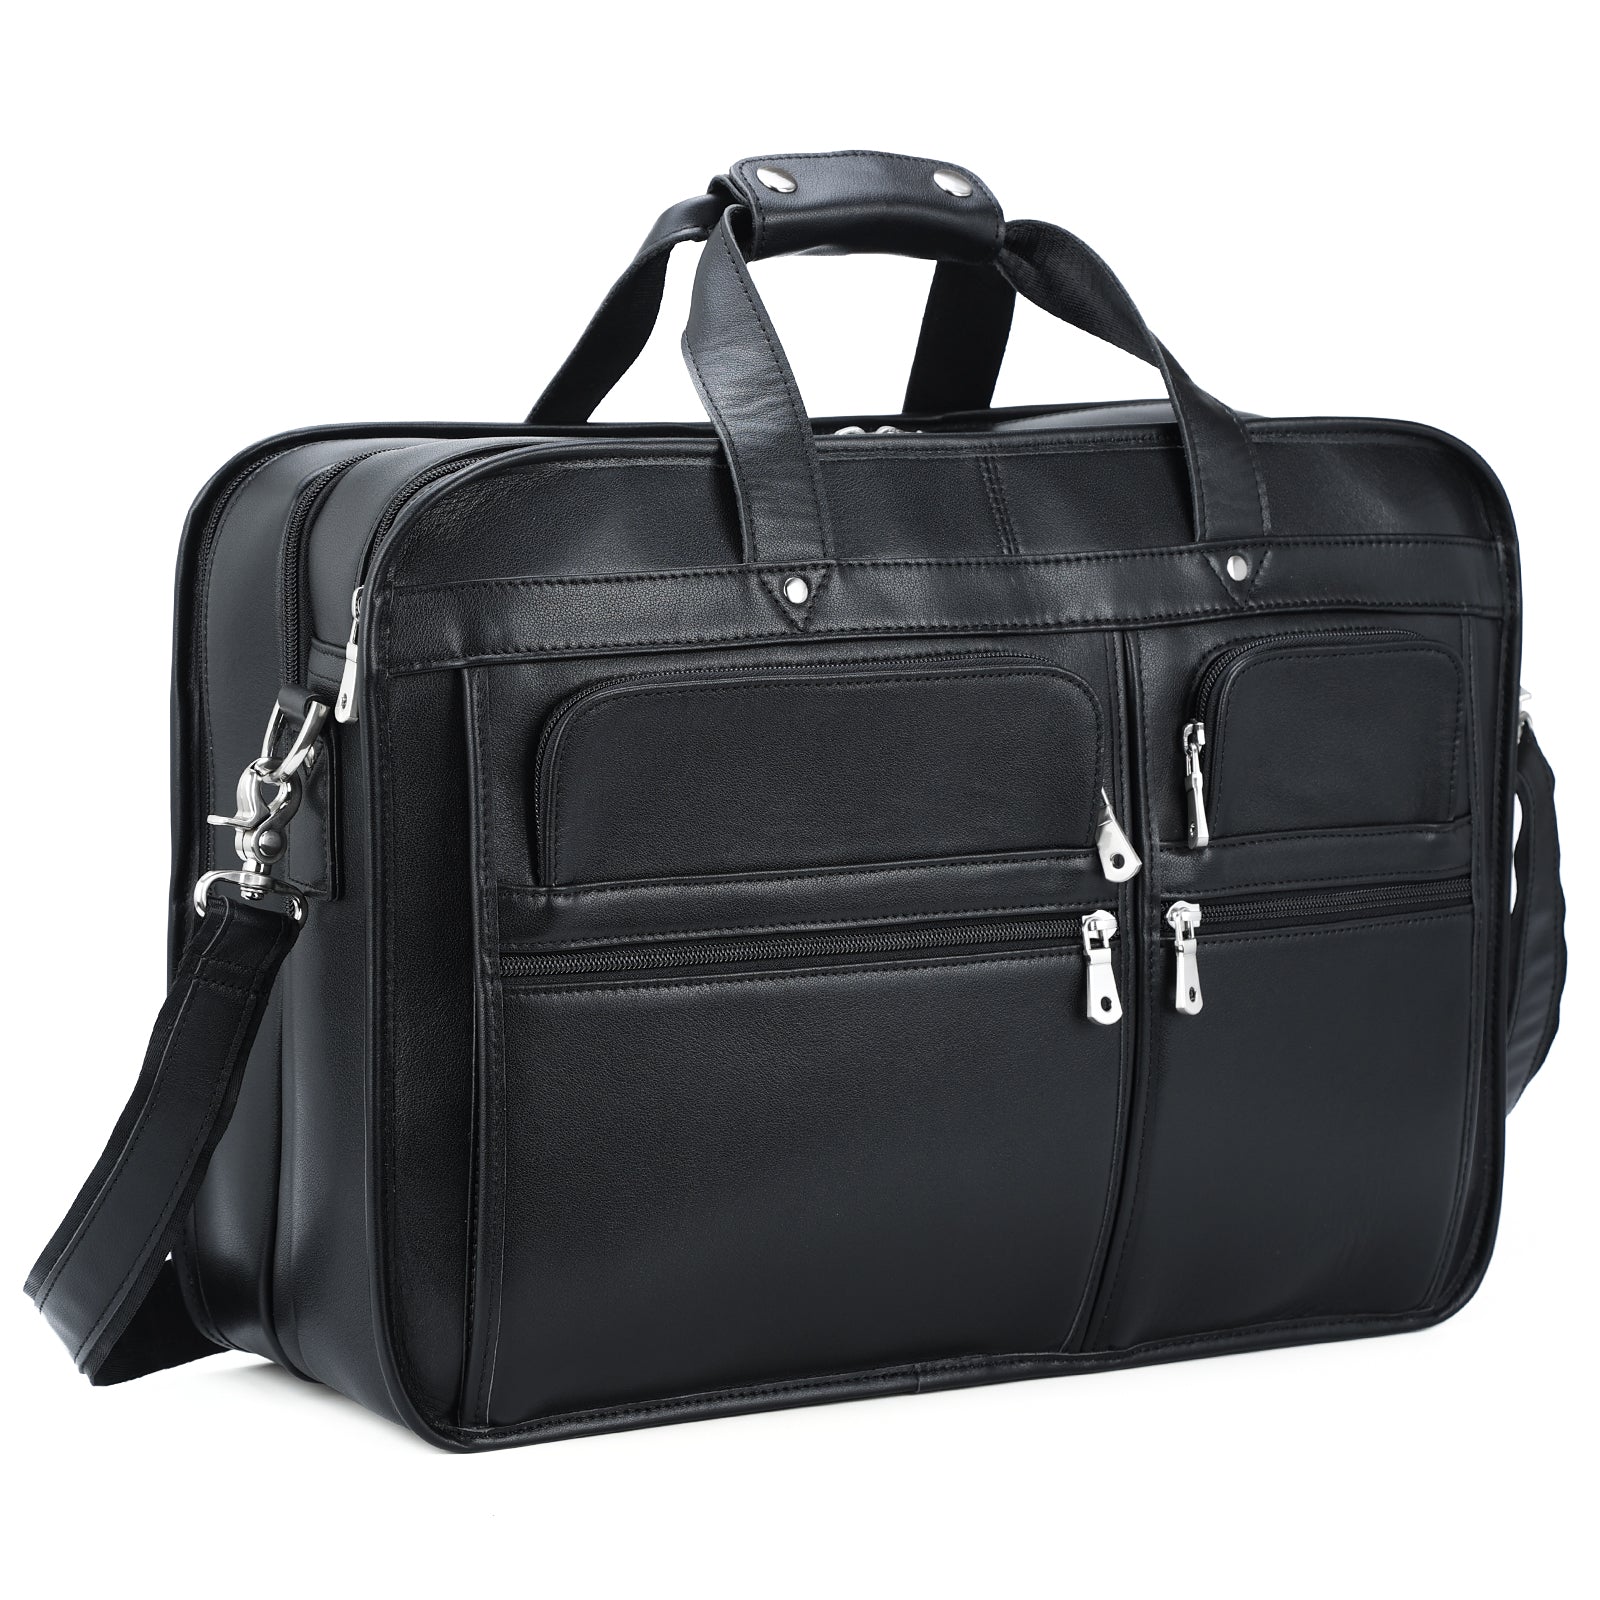 DORRISO New Men Messenger Bags Fashion Shoulder Bag Satchel Briefcase Bag  Portable Laptop Bag College Bag for 12.9 inch Laptop Work Travel Casual